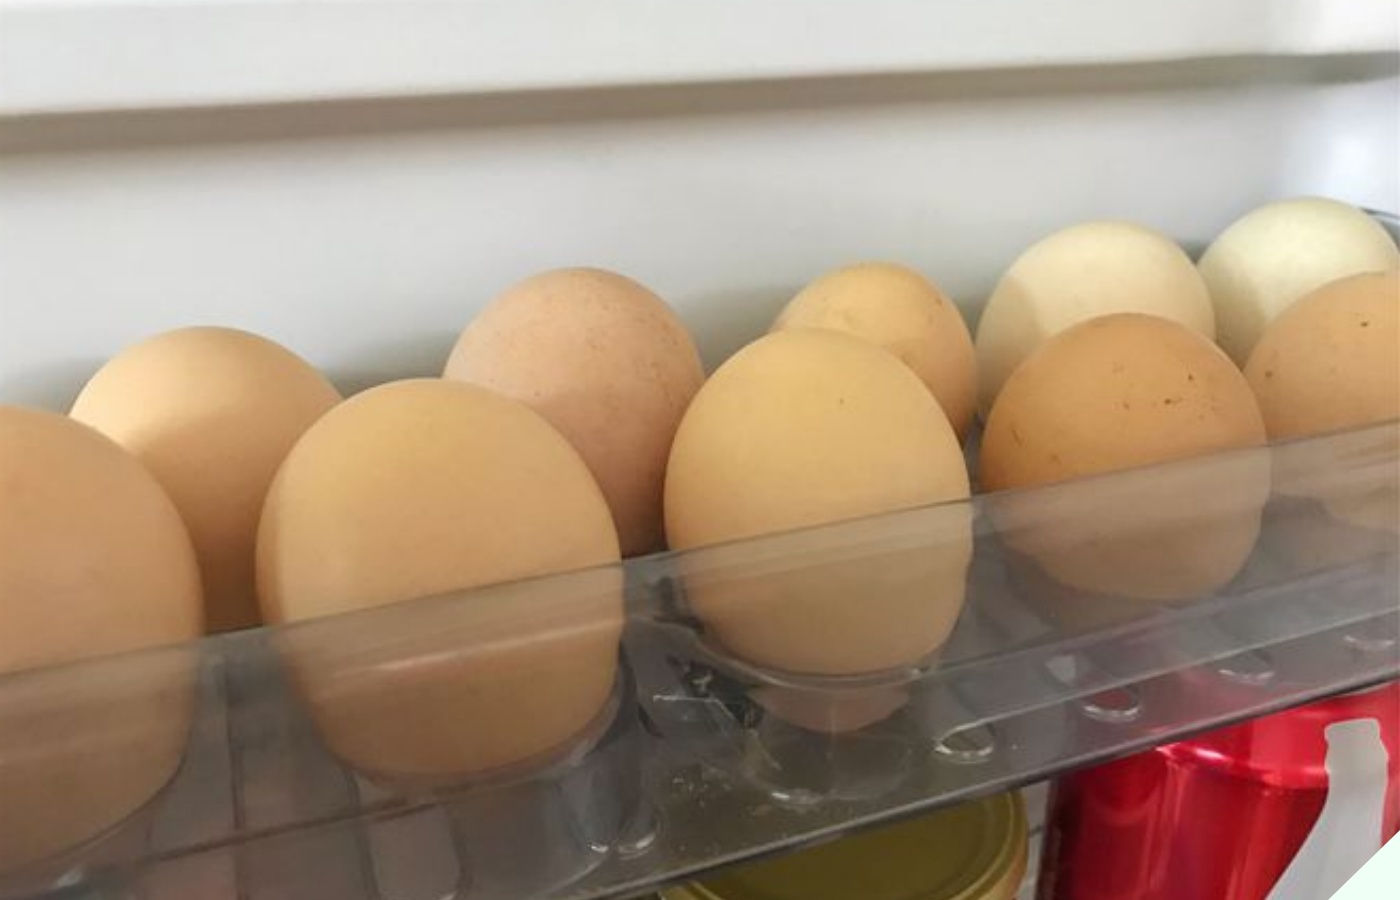 Cứ mua trứng về là cọ rửa thật sạch, chuyên gia lắc đầu nói sai lầm, bảo sao trứng nhanh hỏng, mất sạch chất dinh dưỡng - 8